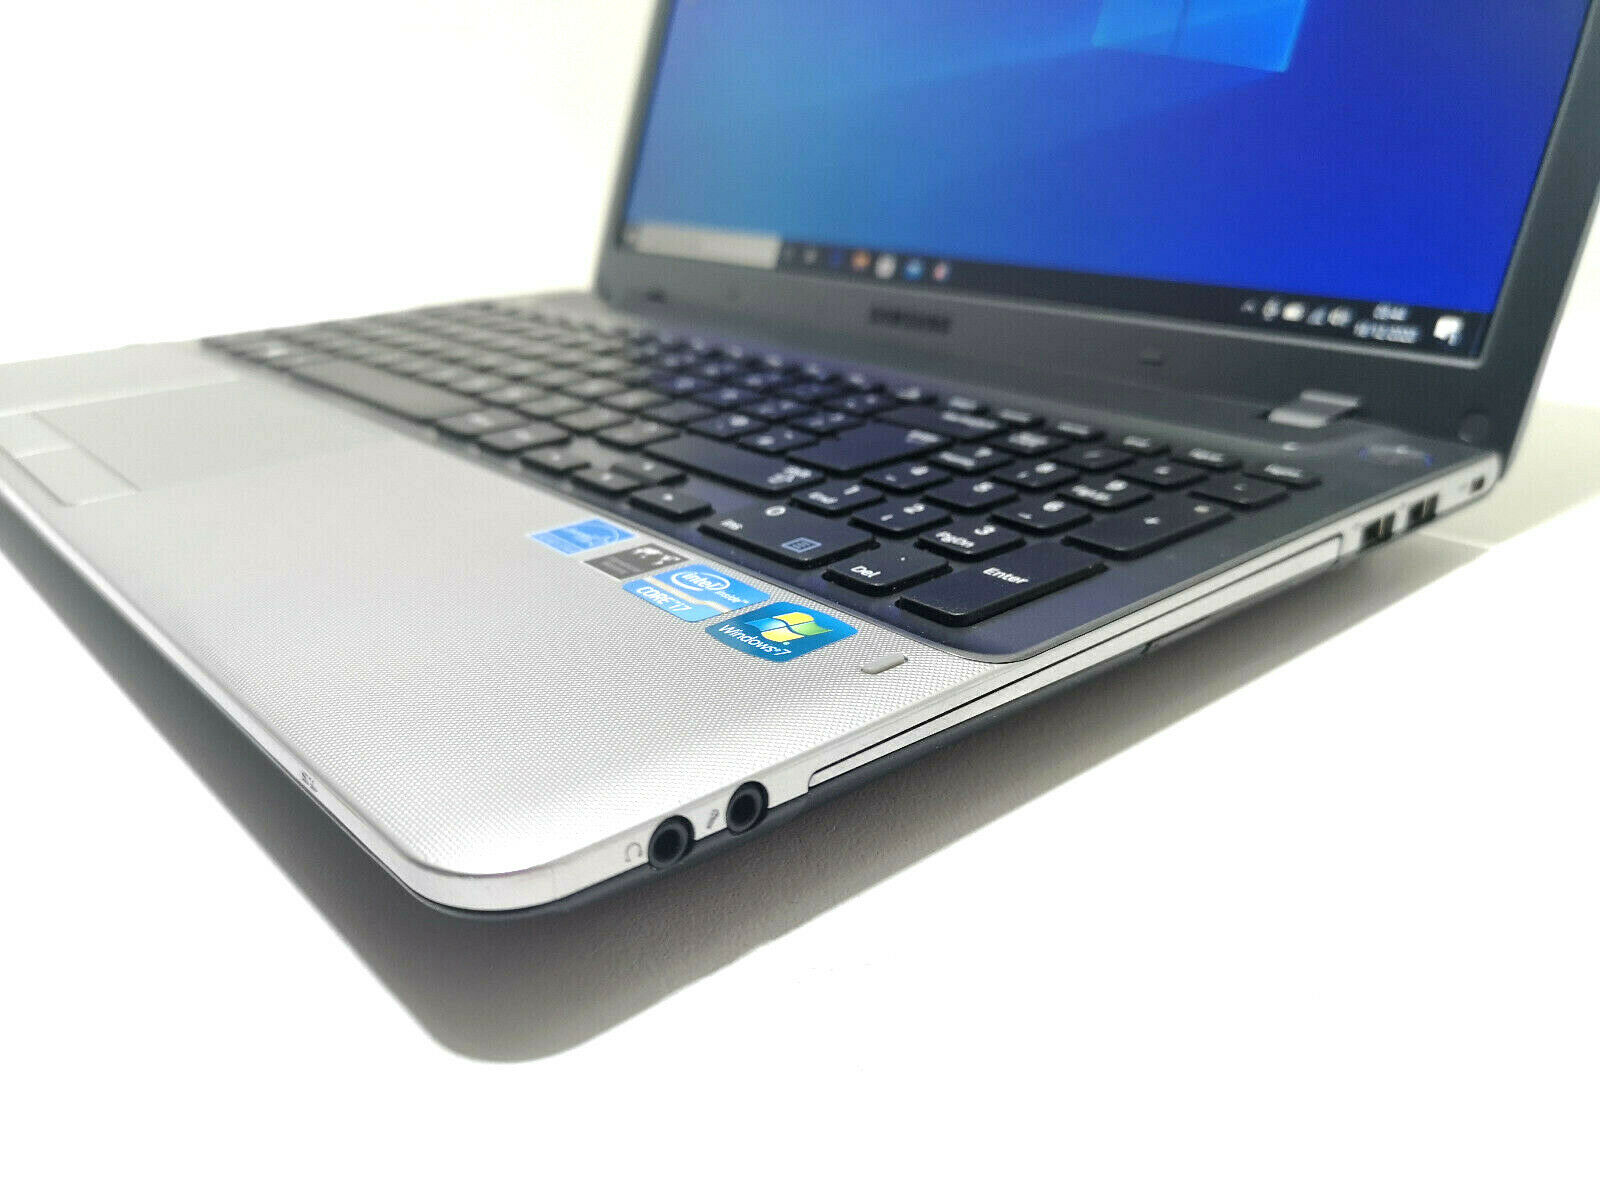 Refurbished Samsung NP350V5C Laptop PC